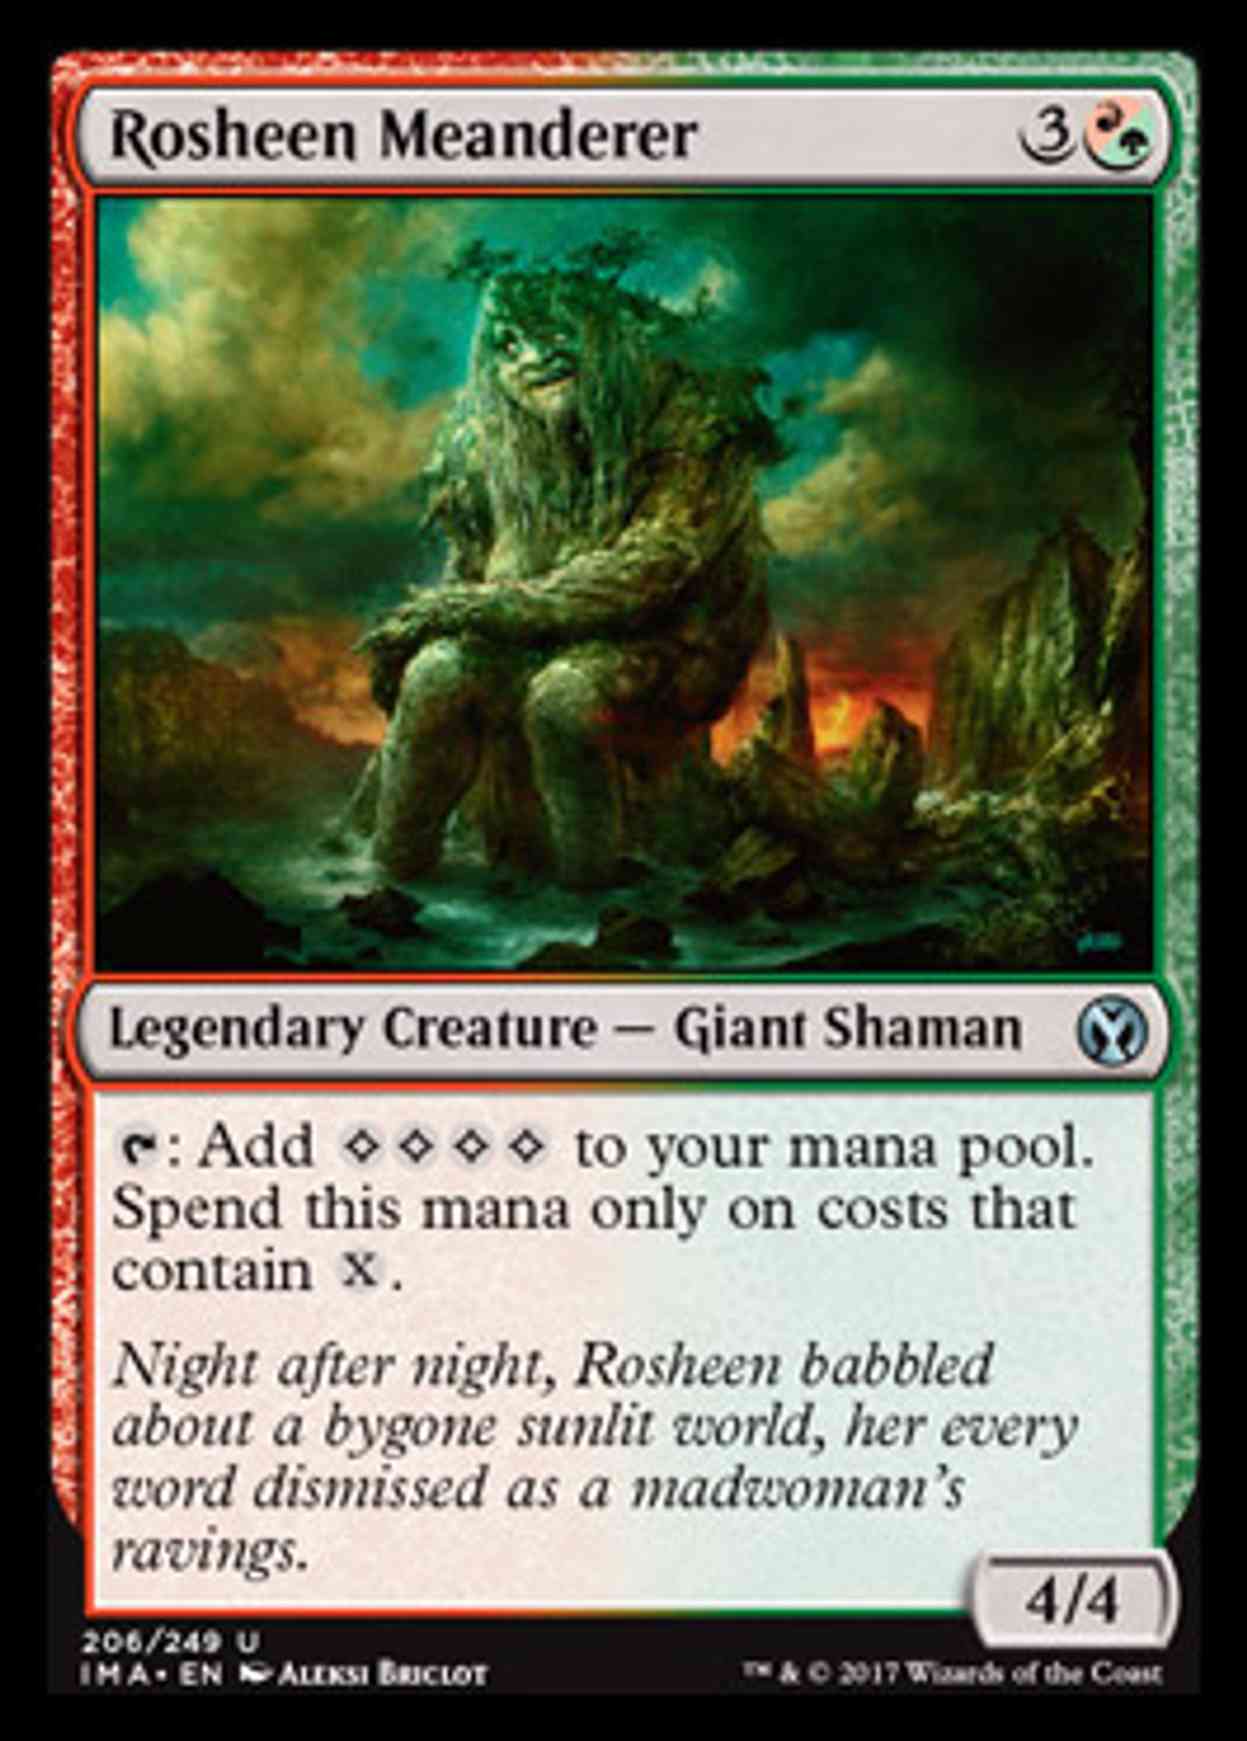 Rosheen Meanderer magic card front